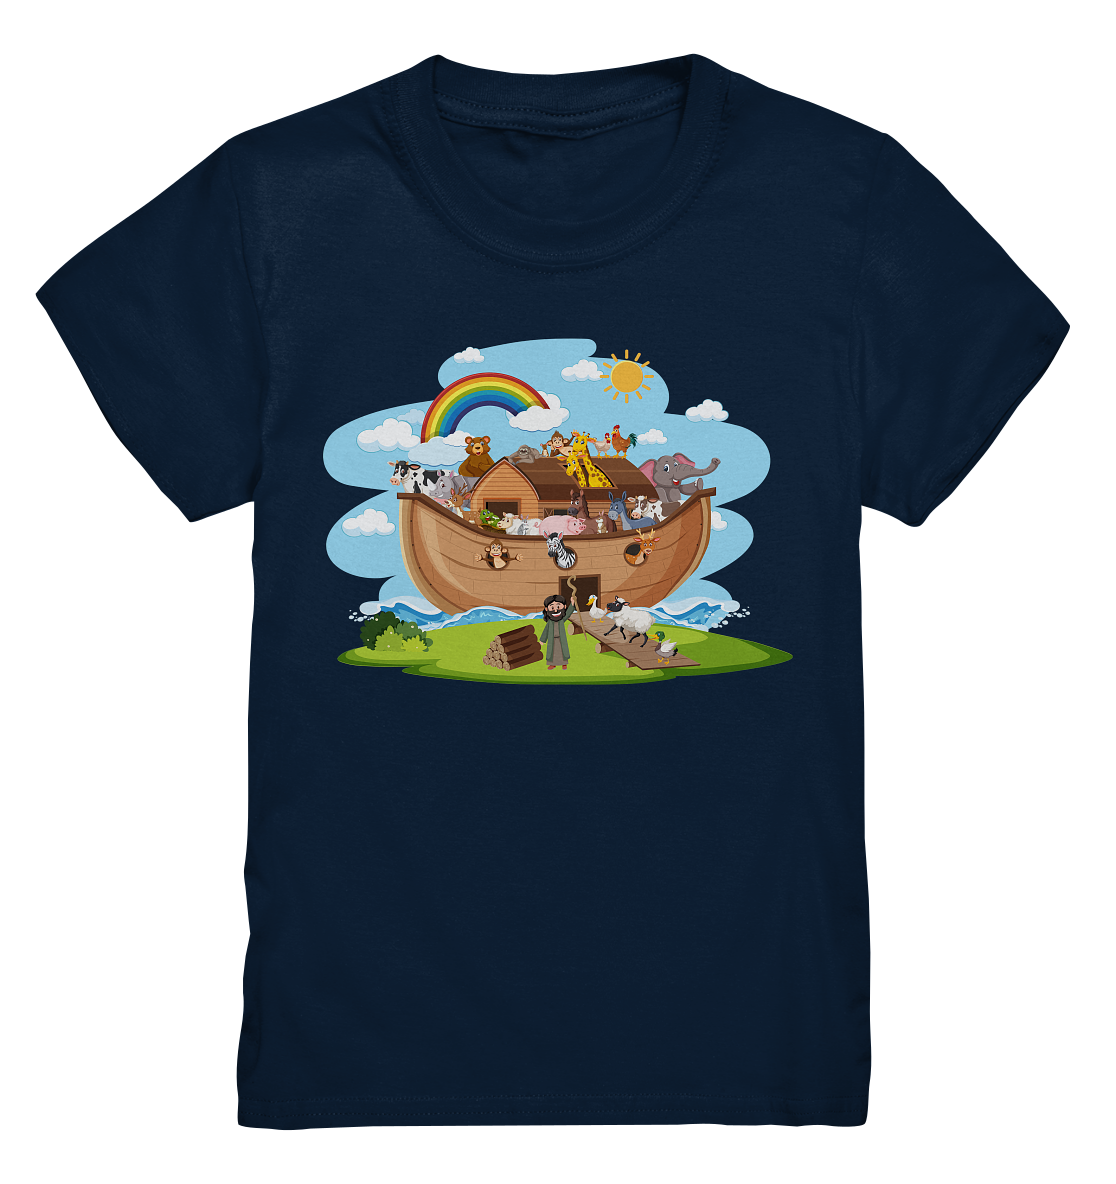 Noah's Arche - Kids Premium Shirt